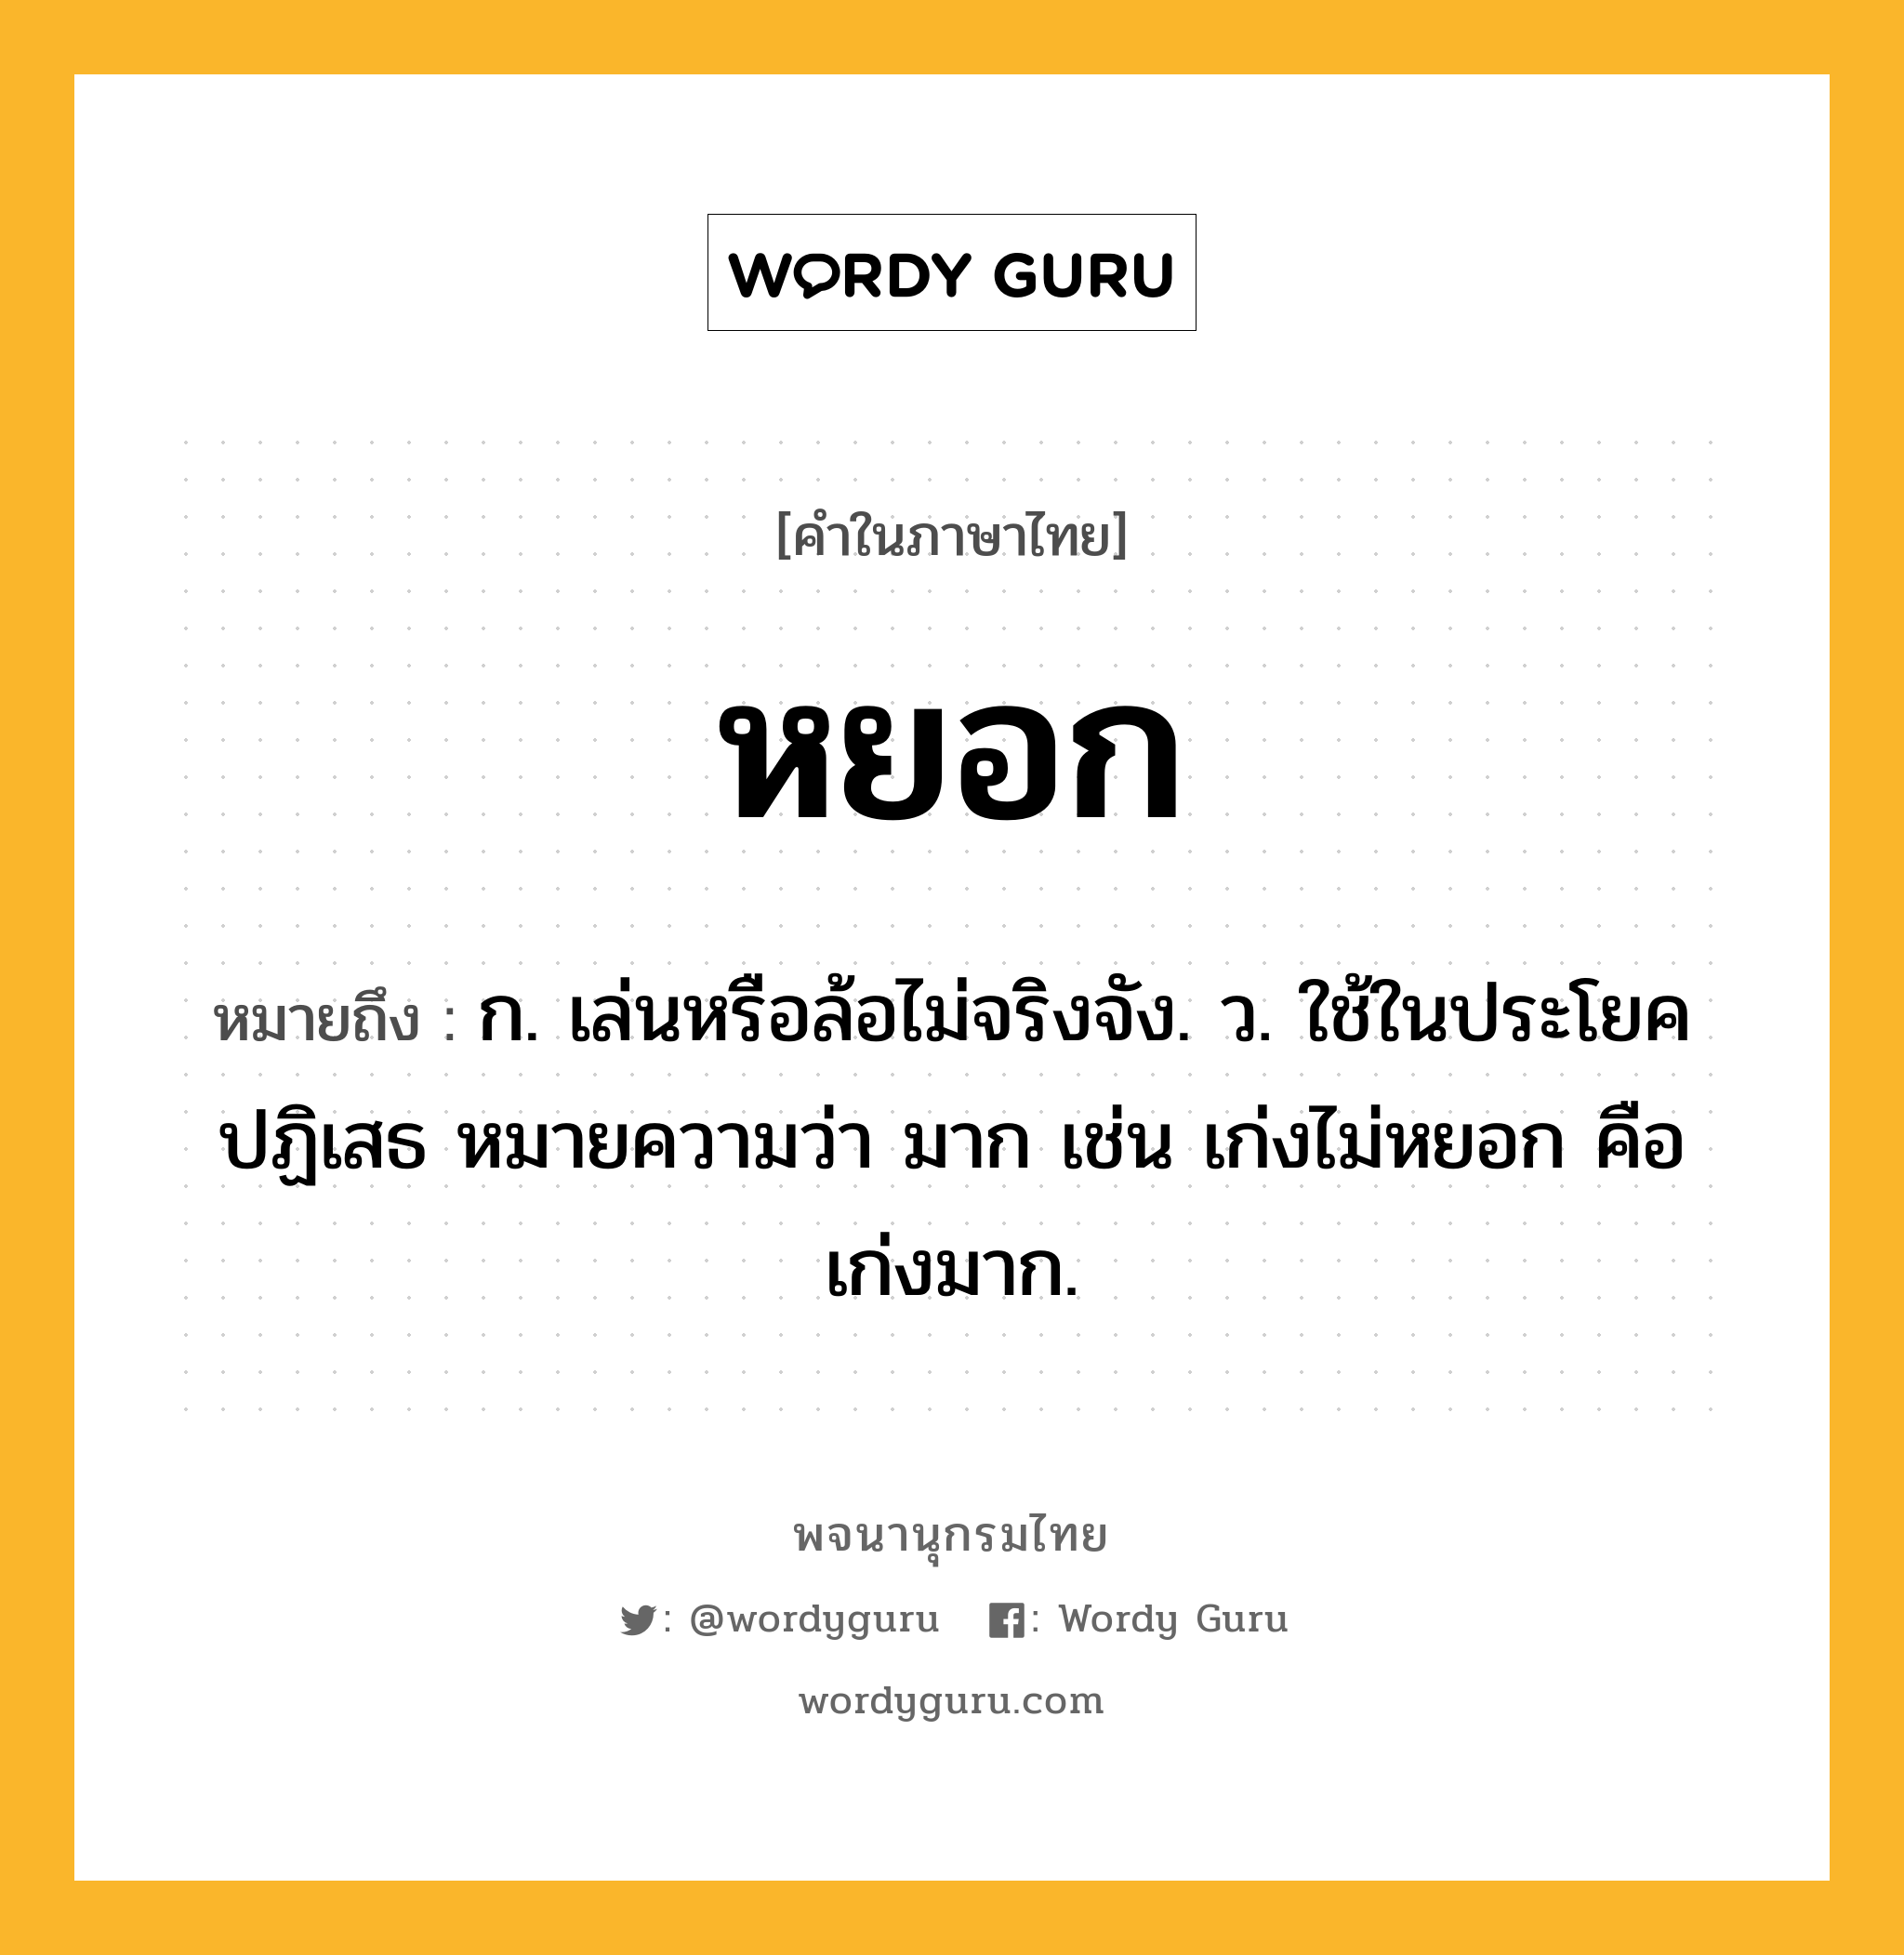 หยอก ความหมาย หมายถึงอะไร?, คำในภาษาไทย หยอก หมายถึง ก. เล่นหรือล้อไม่จริงจัง. ว. ใช้ในประโยคปฏิเสธ หมายความว่า มาก เช่น เก่งไม่หยอก คือ เก่งมาก.